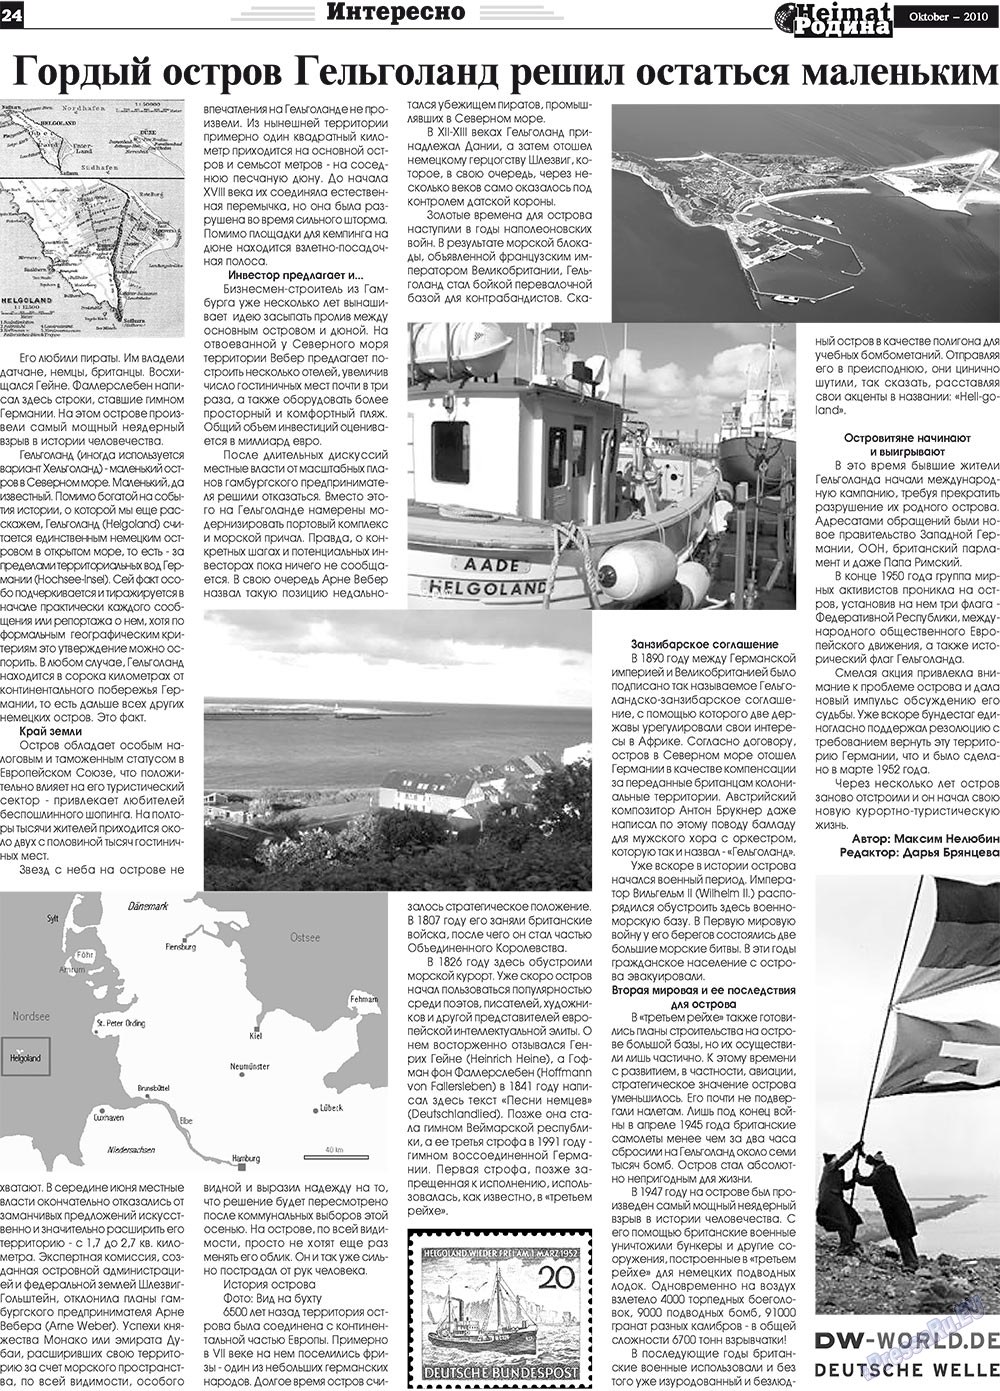 Heimat-Родина (газета). 2010 год, номер 10, стр. 24